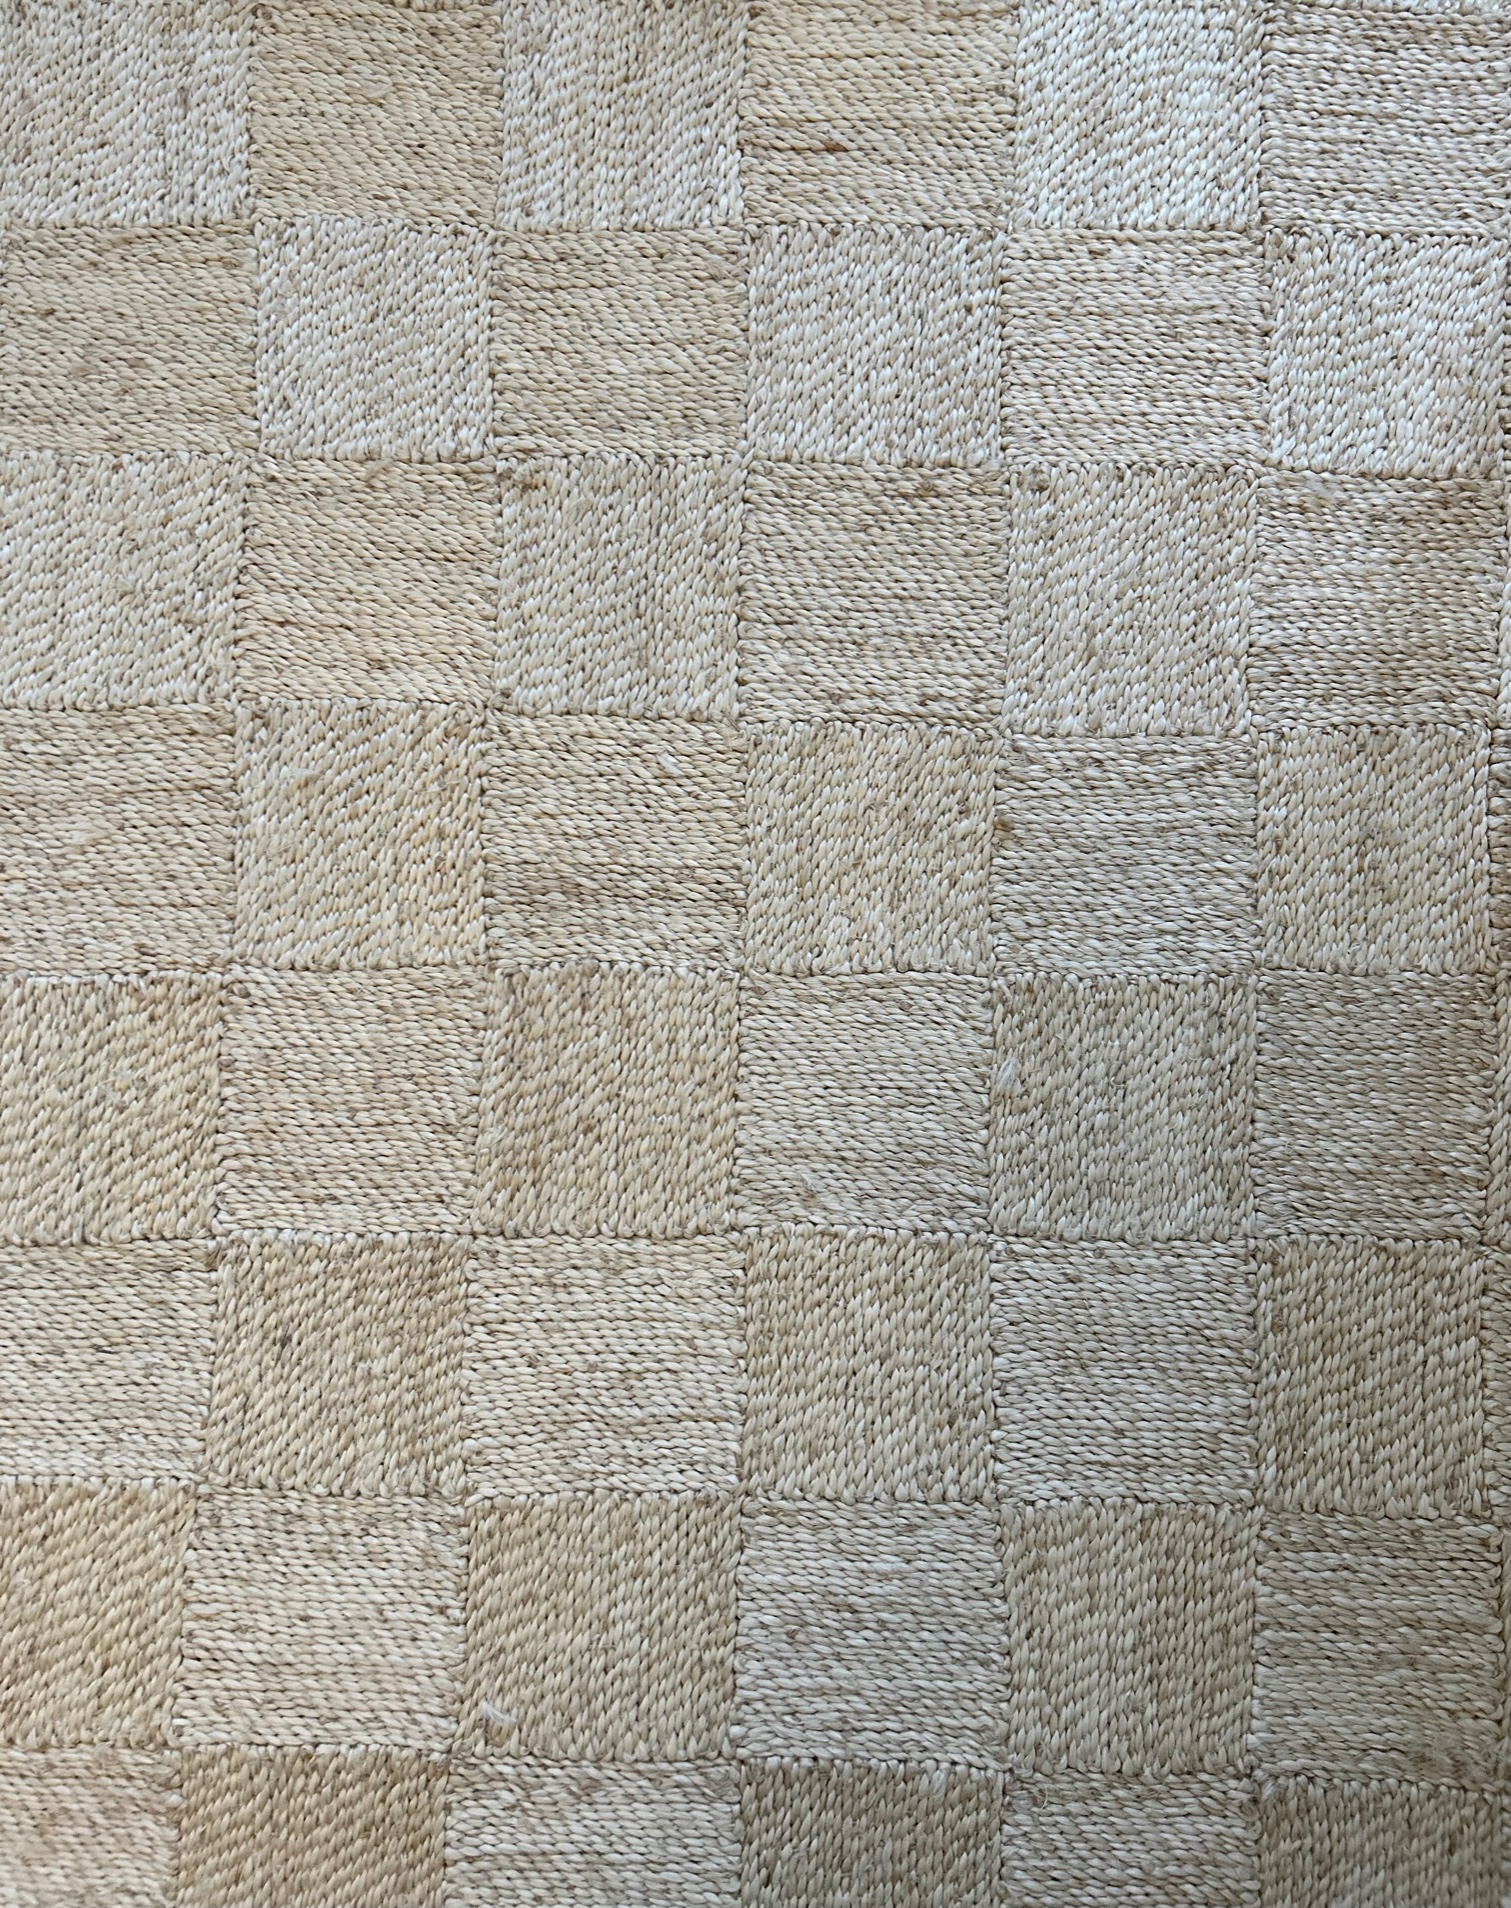 Maison Bengal Neutral Checkered Jute Floor Mat